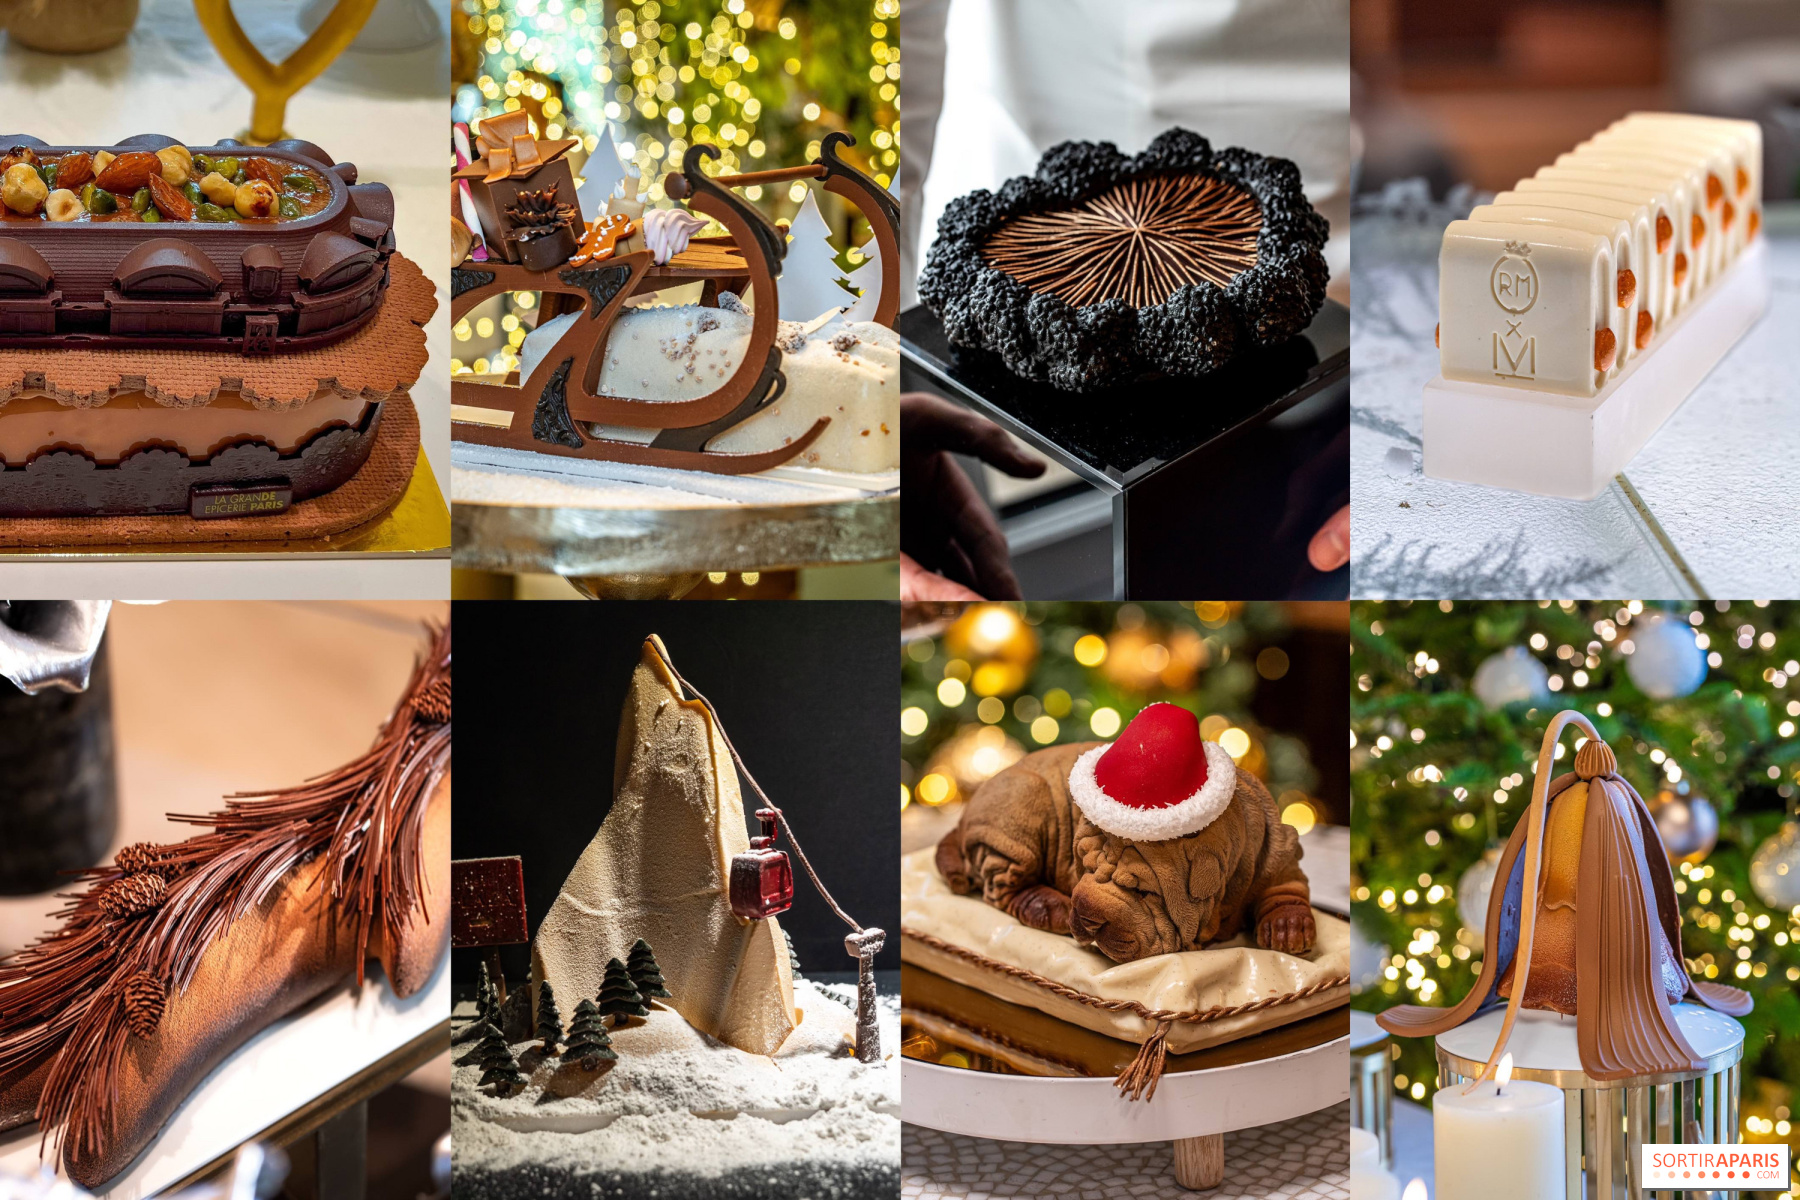 Décor de gâteau et bûche de Noël : 4 décors traditionnels de Noël